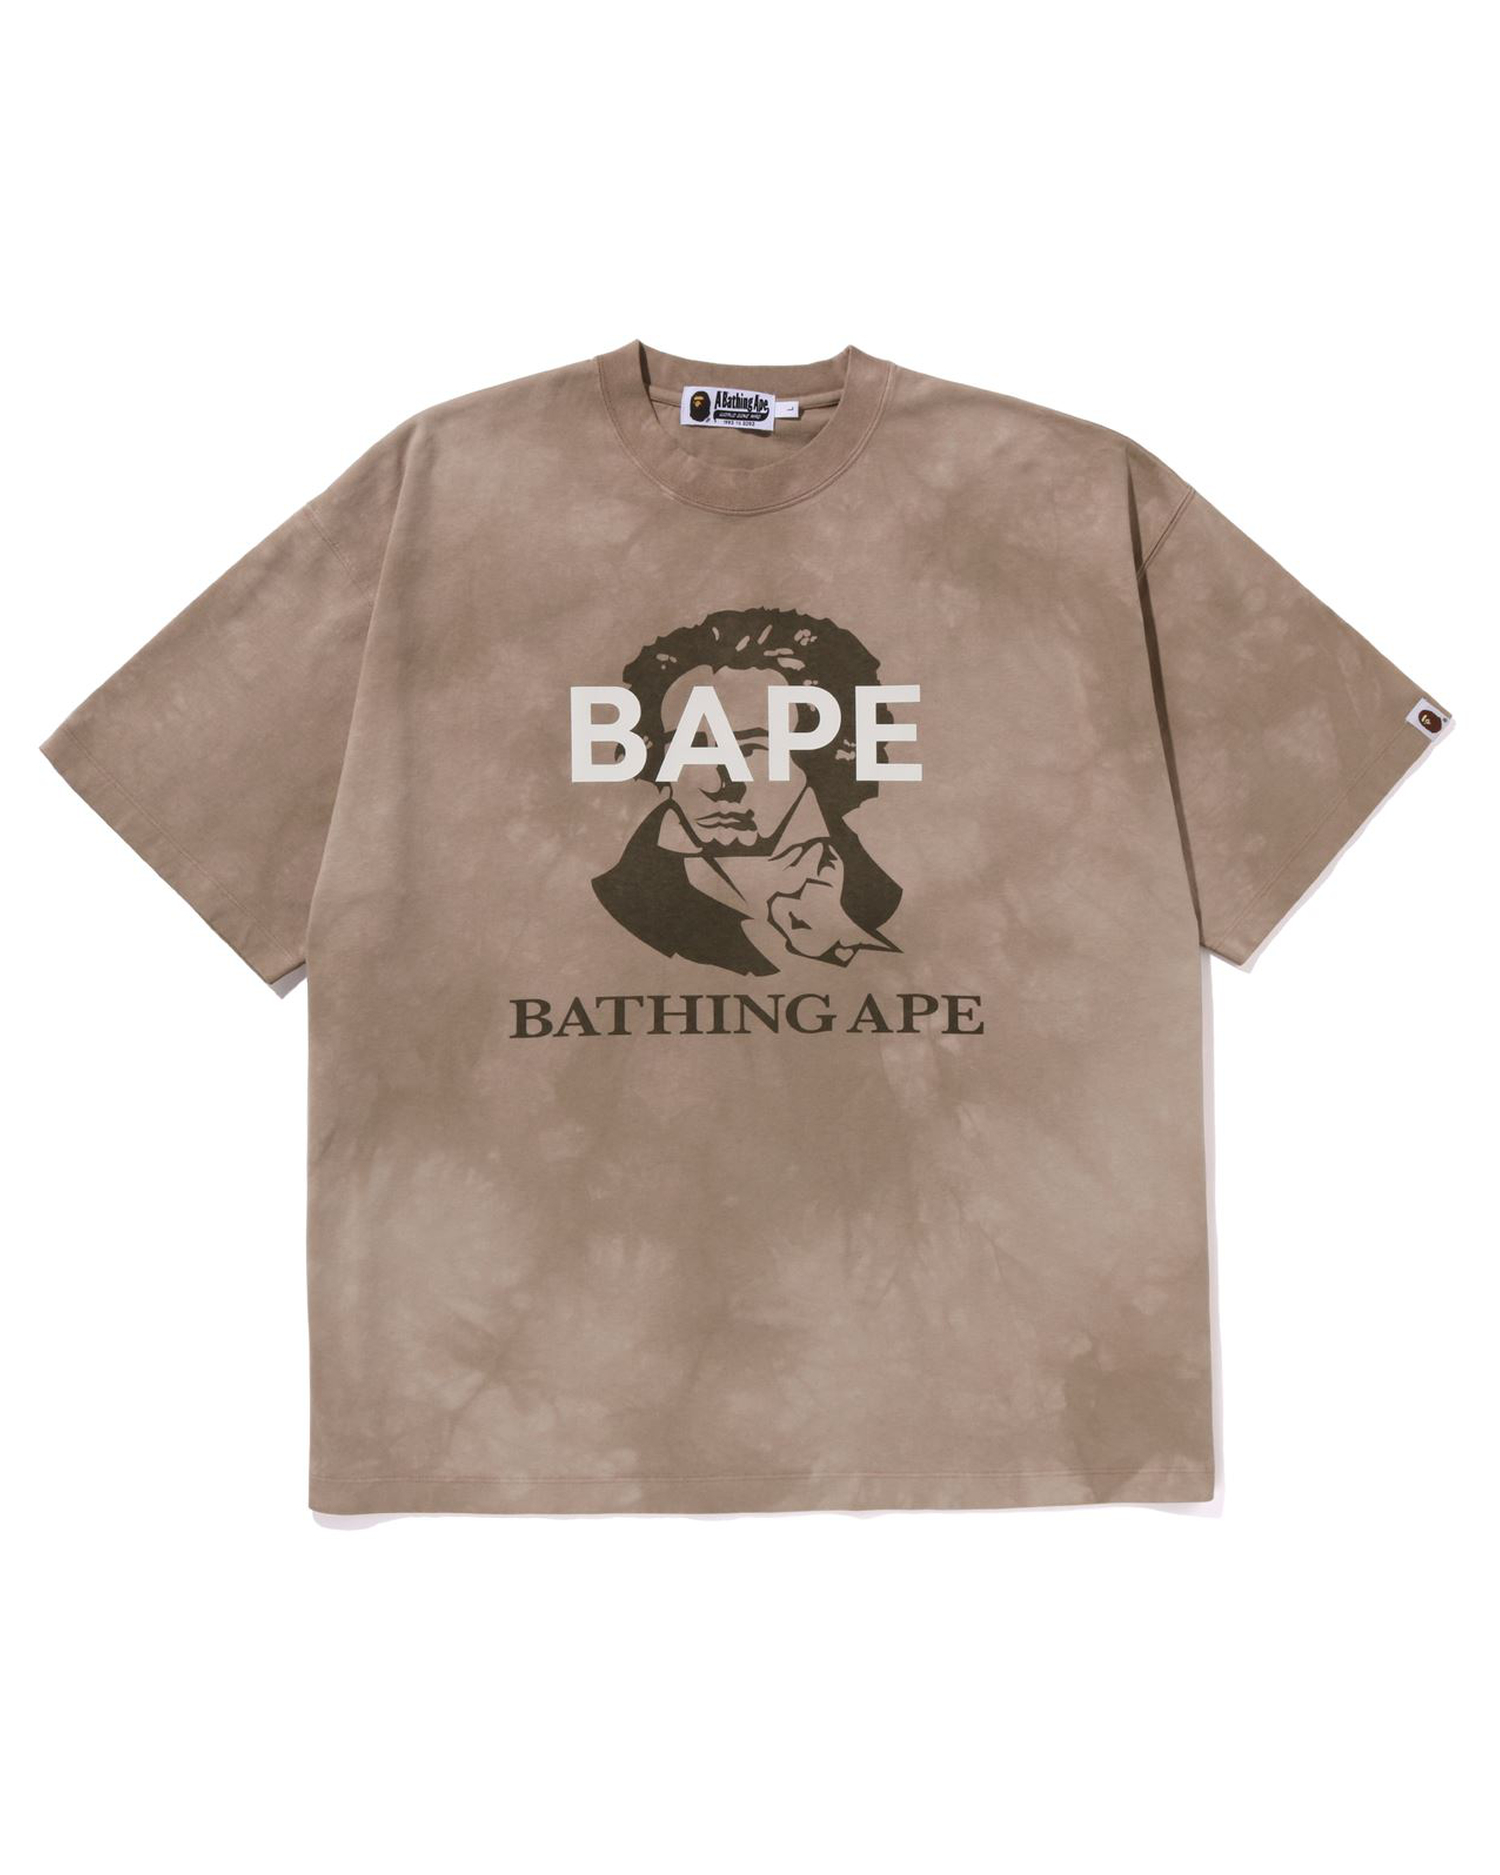 Shop Tie Dye Bathing Ape Tee Online | BAPE